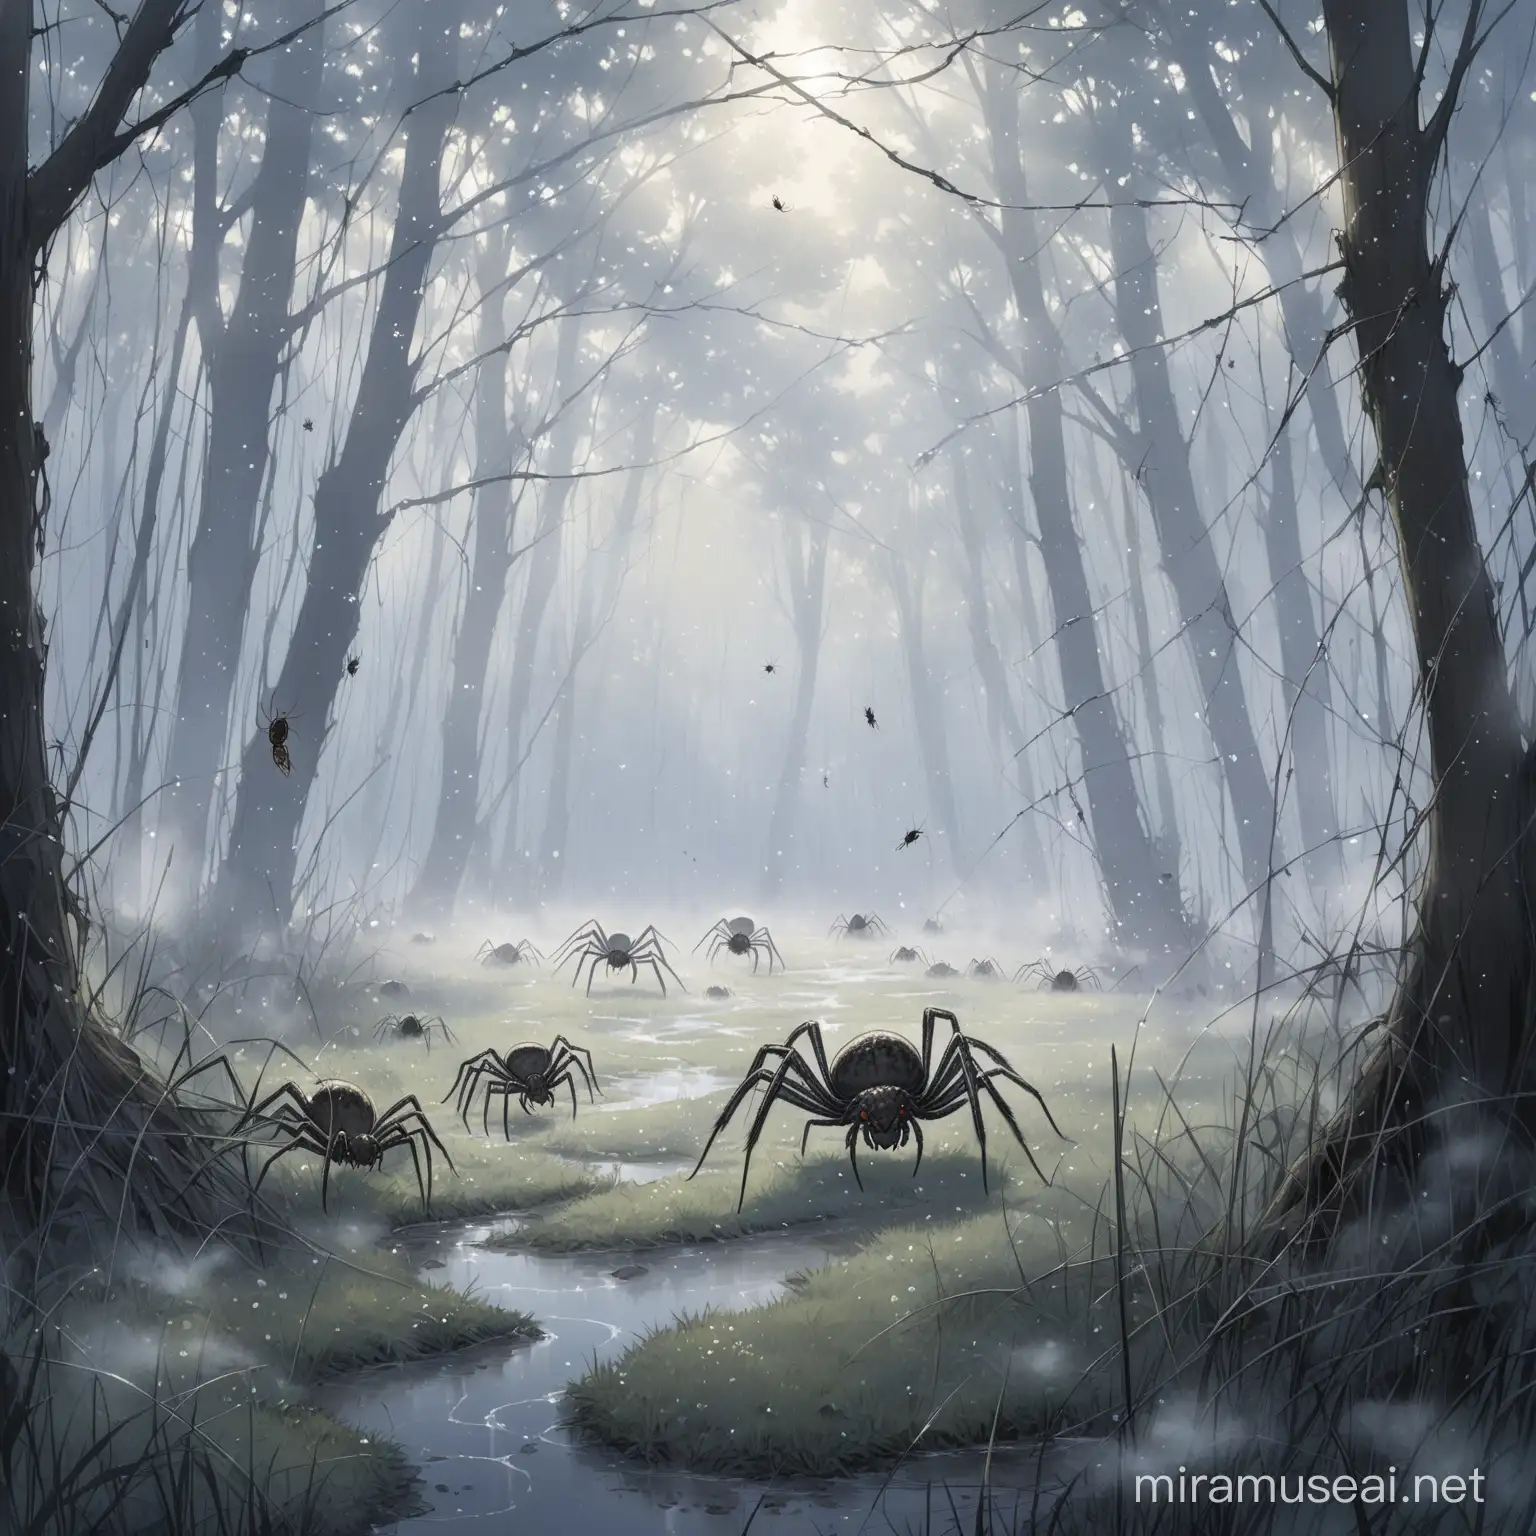 Серебристый туман плотным потоком вылетает из земли и раскидывает в стороны больших пауков и повреждая их